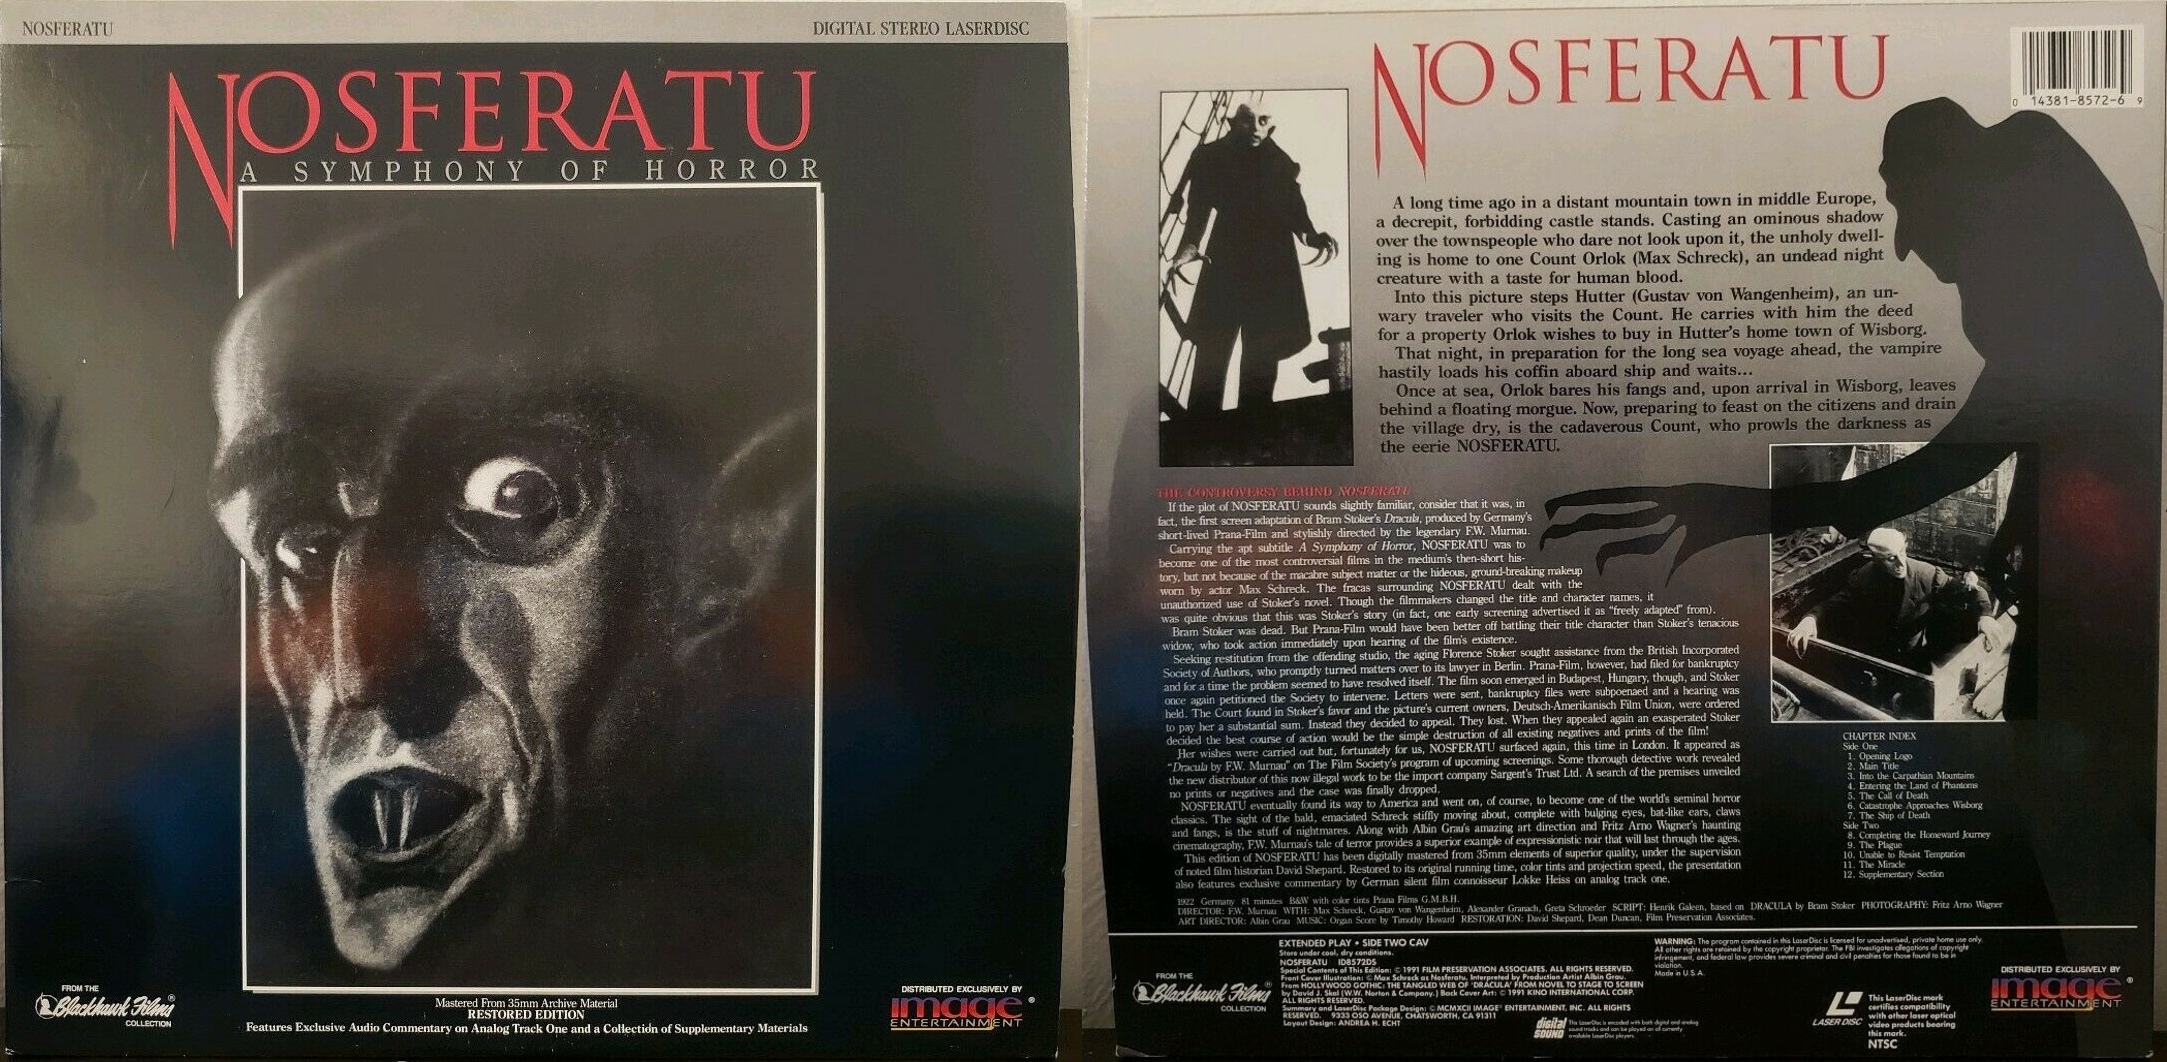 Nosferatu (1922) US Image LaserDisc, 1992